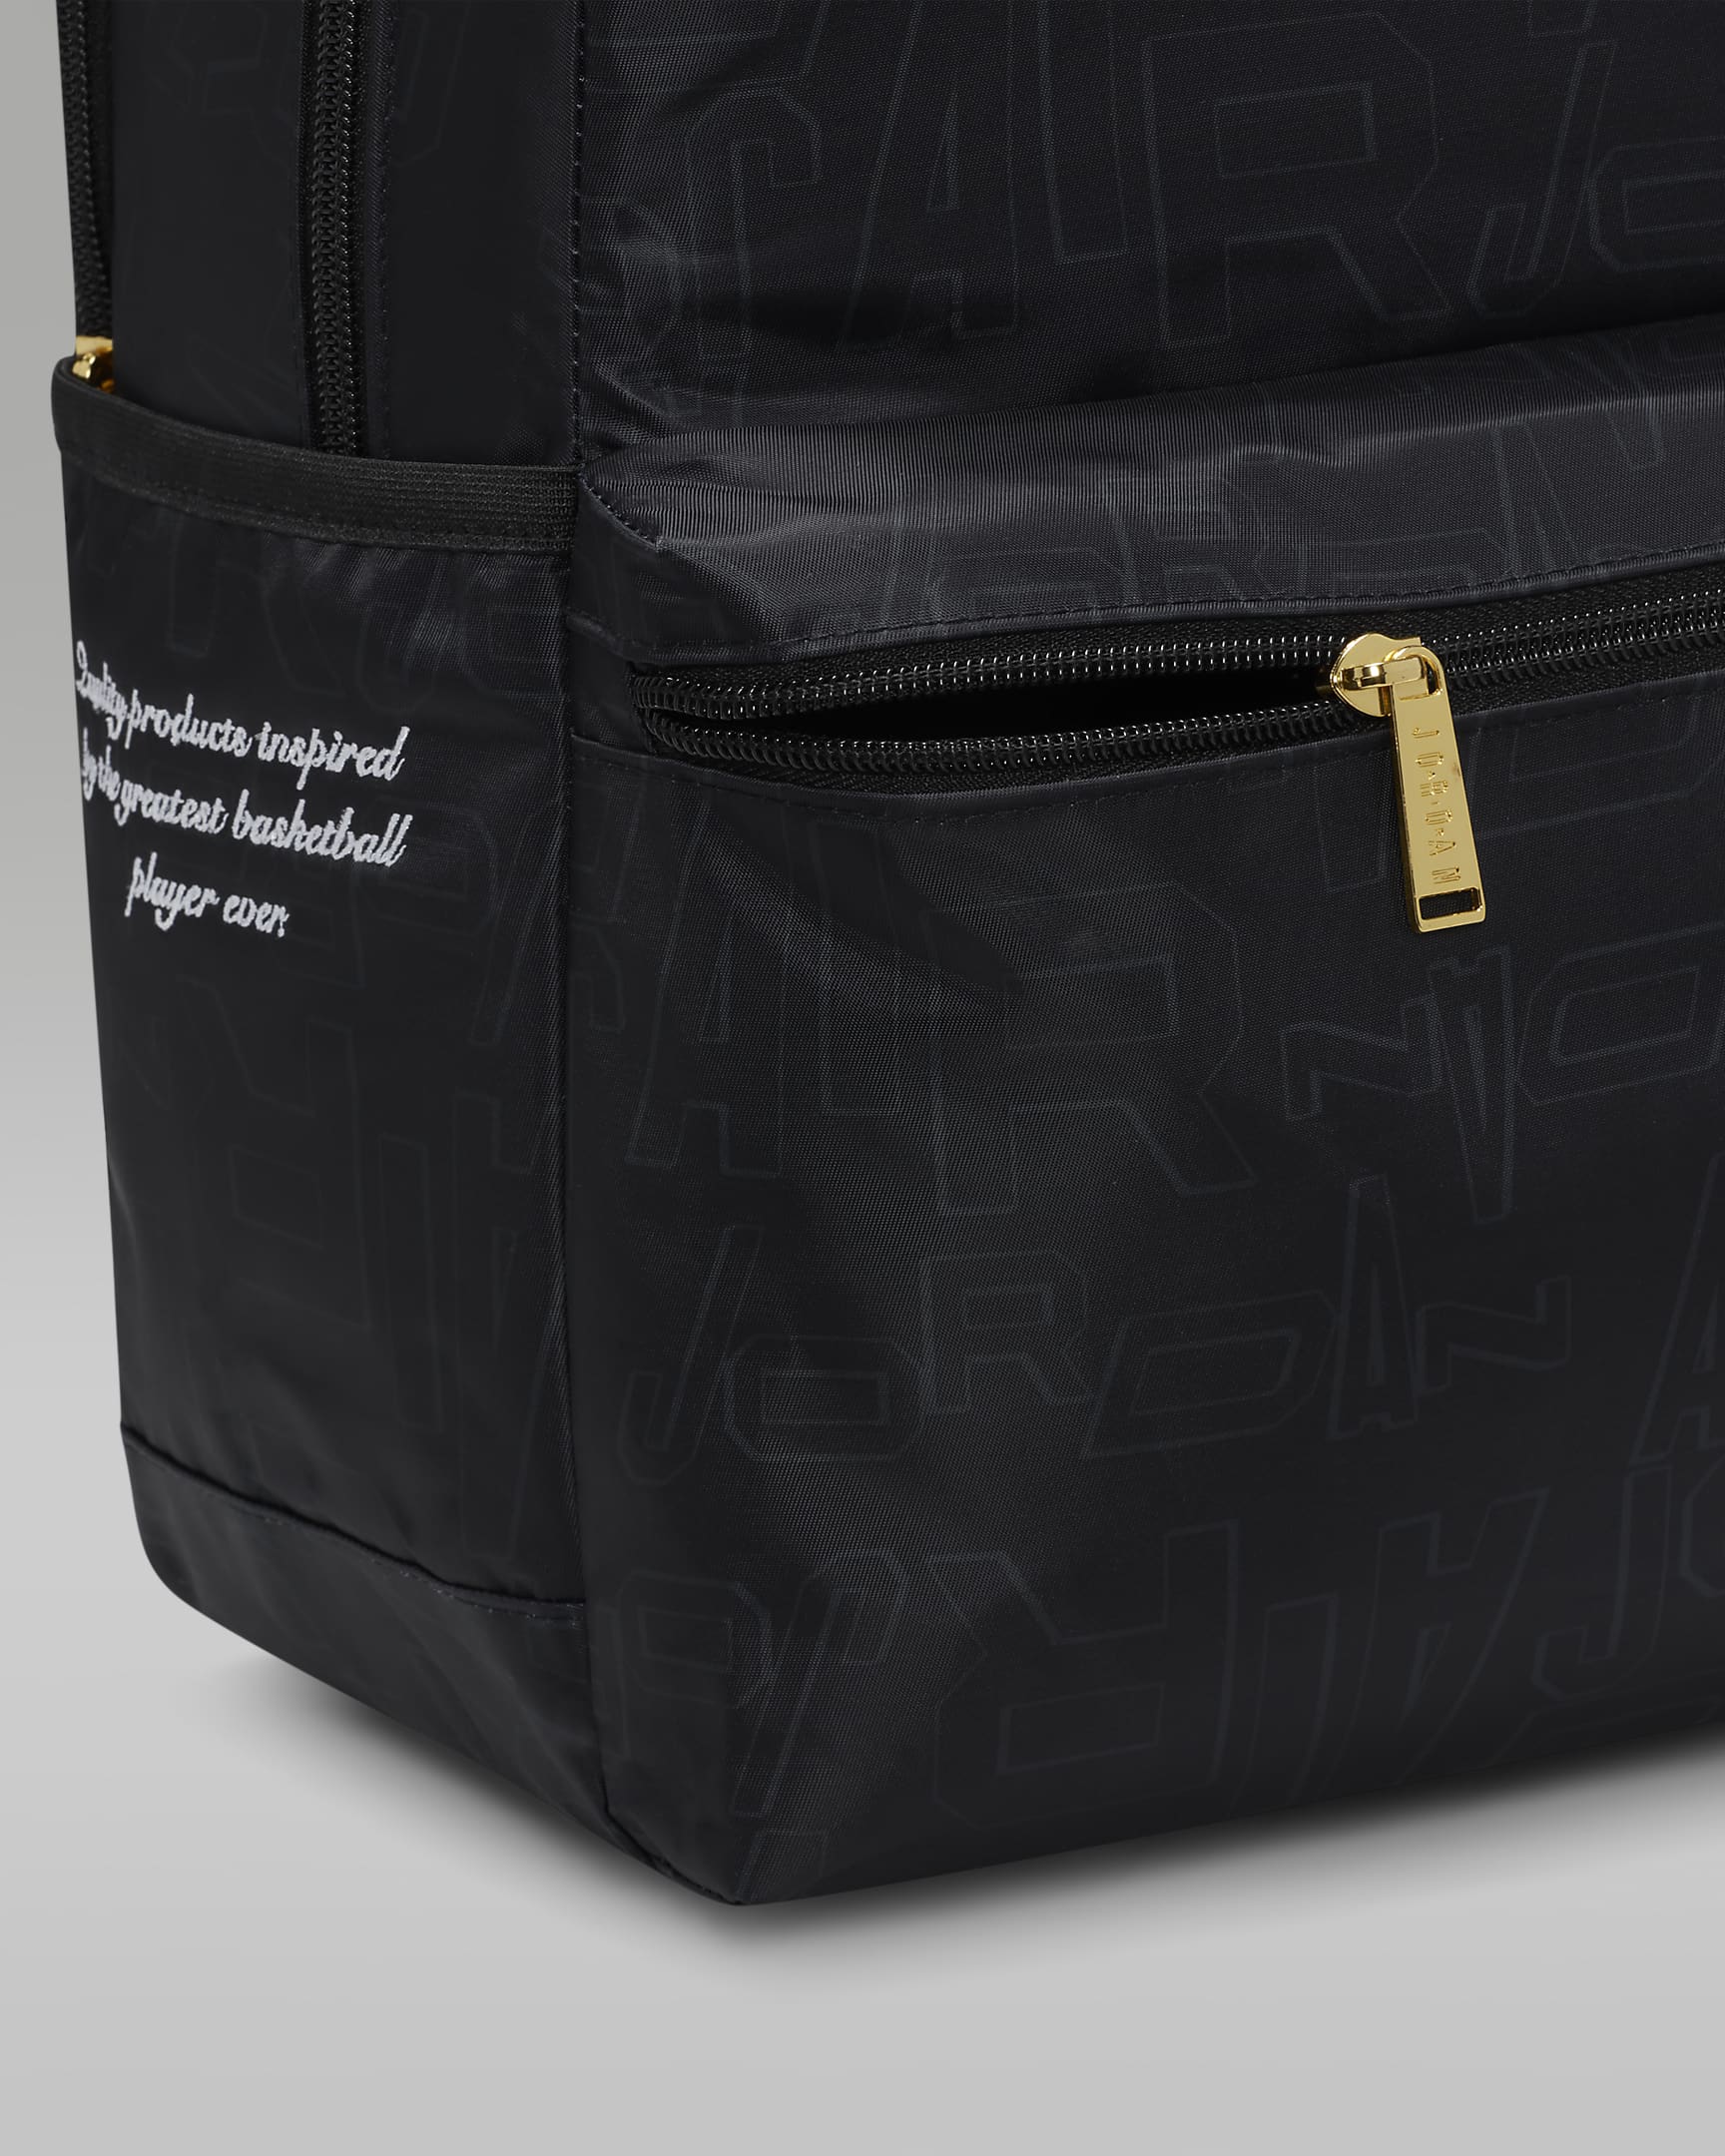 Jordan Black and Gold Backpack Backpack (19L). Nike FI